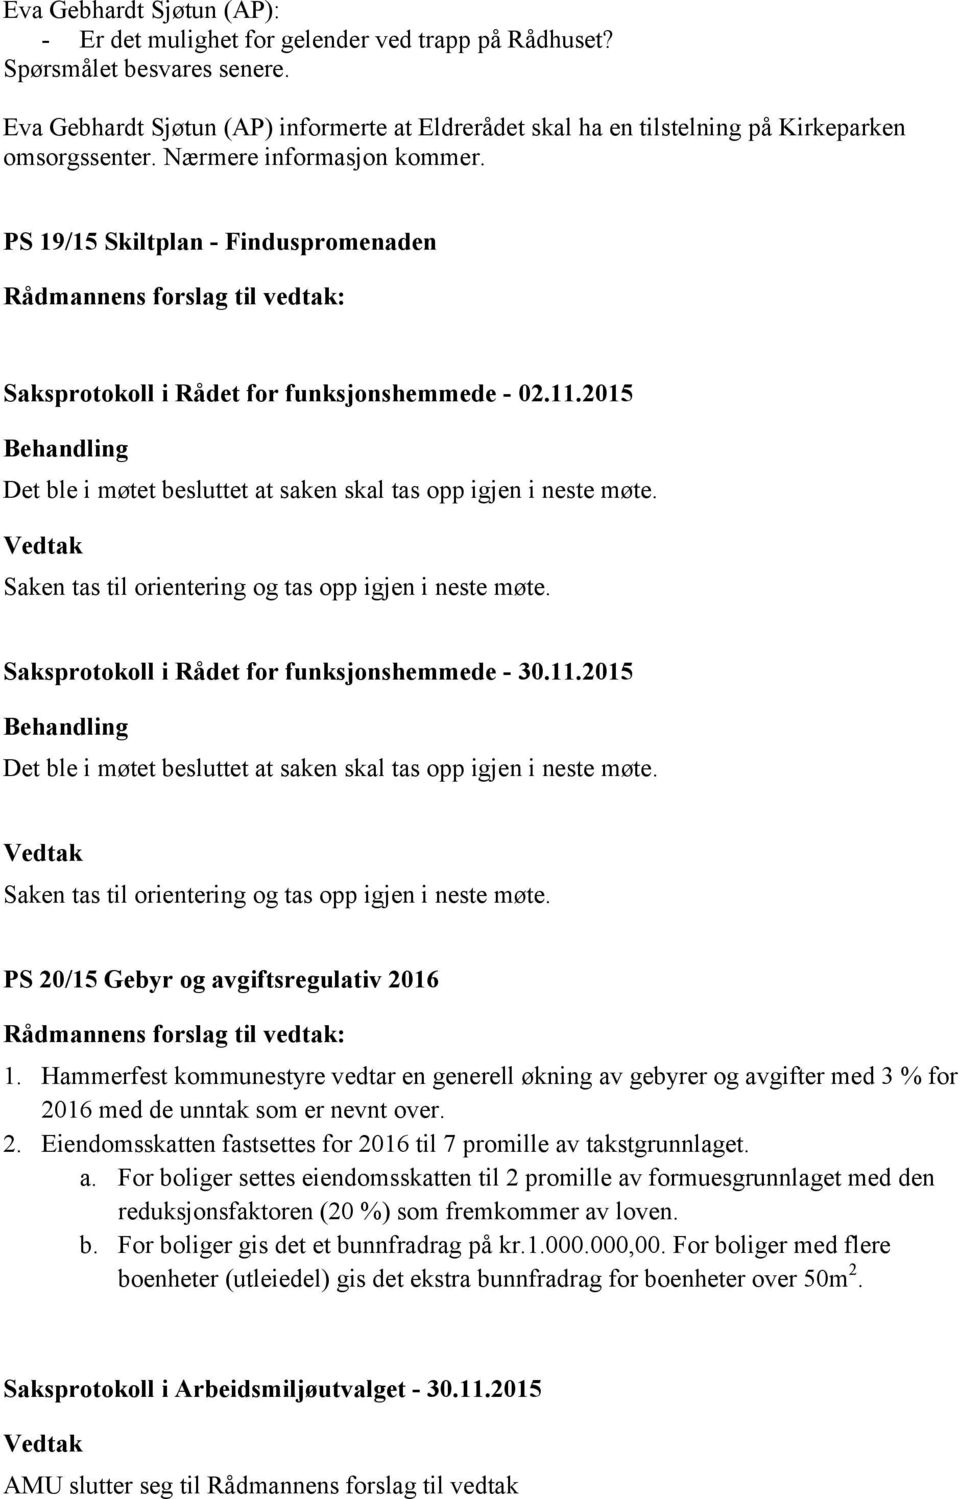 PS 19/15 Skiltplan - Finduspromenaden Saksprotokoll i Rådet for funksjonshemmede - 02.11.2015 Det ble i møtet besluttet at saken skal tas opp igjen i neste møte.